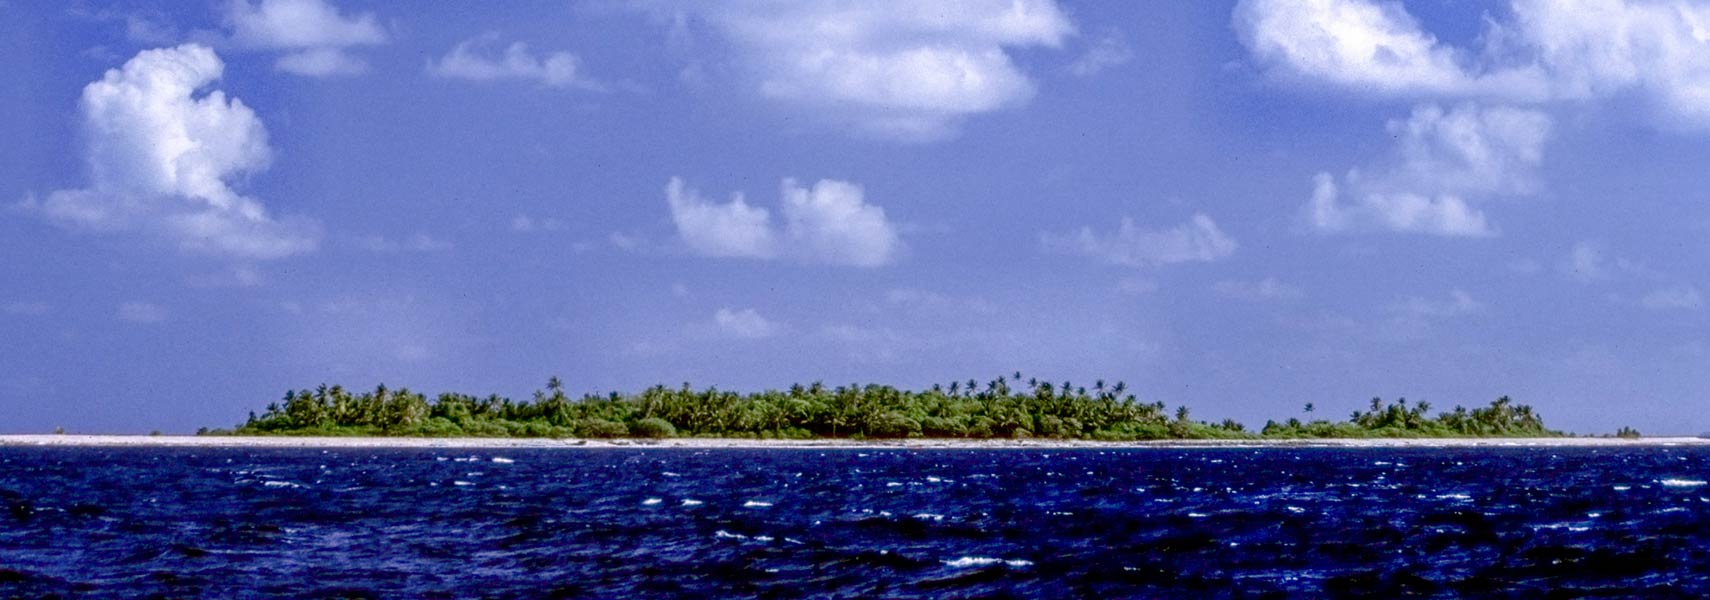 Funafuti atoll Tuvalu